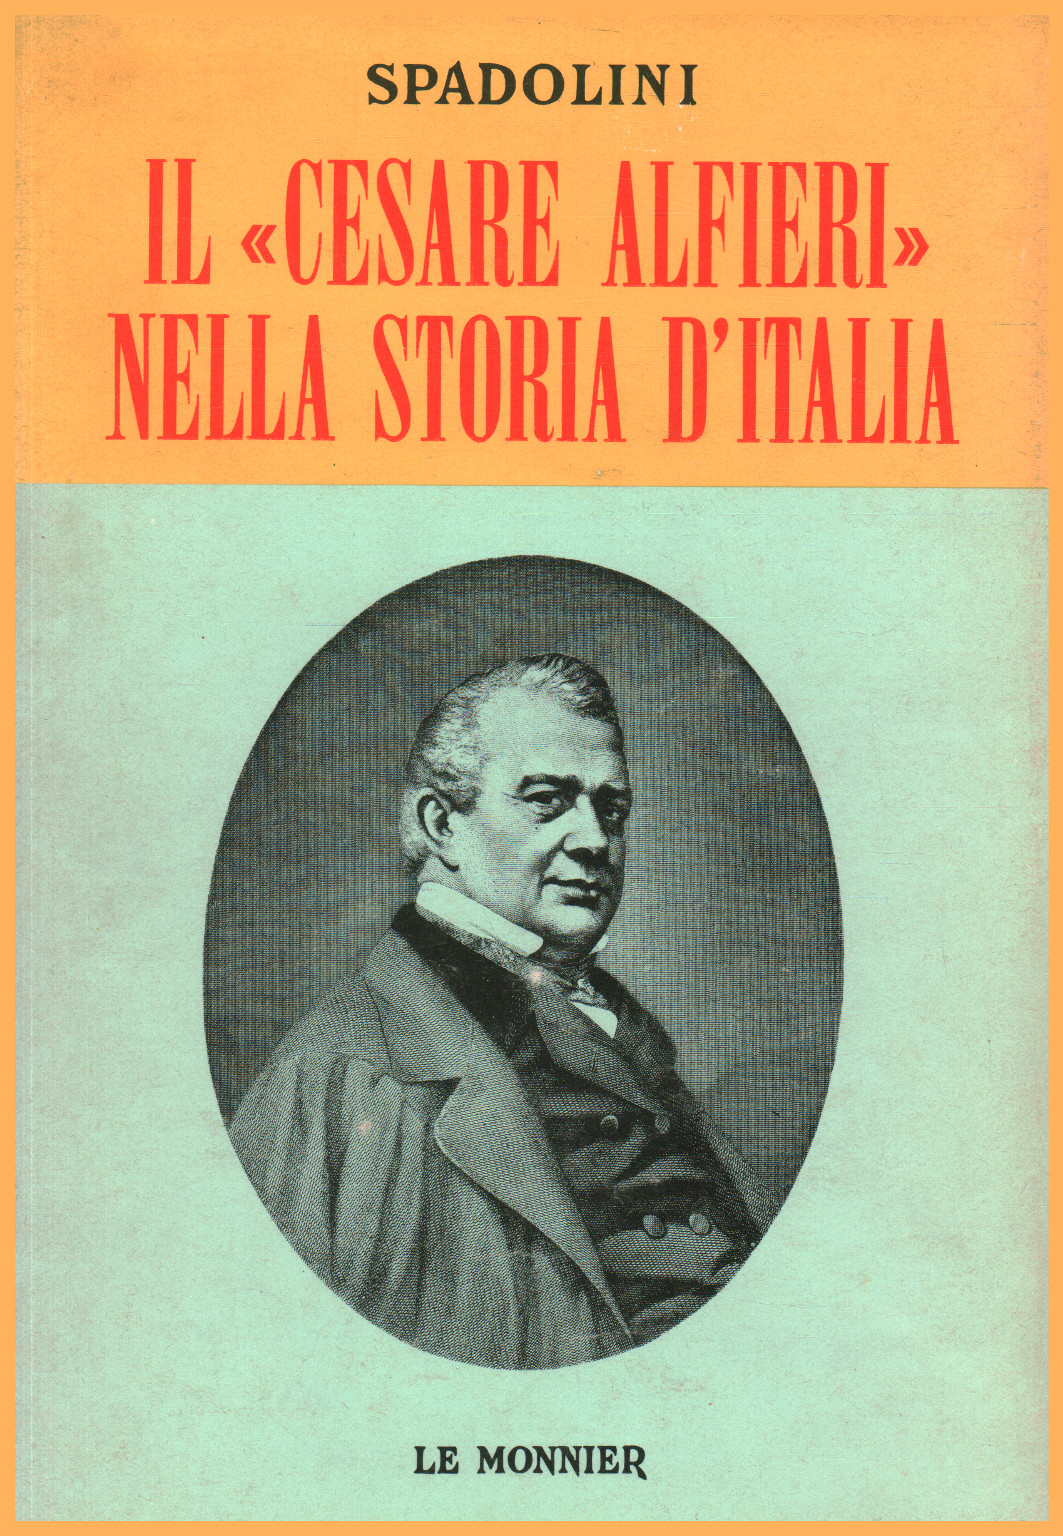 Le "Cesare Alfieri" dans l'histoire de l'Italie, s.a.